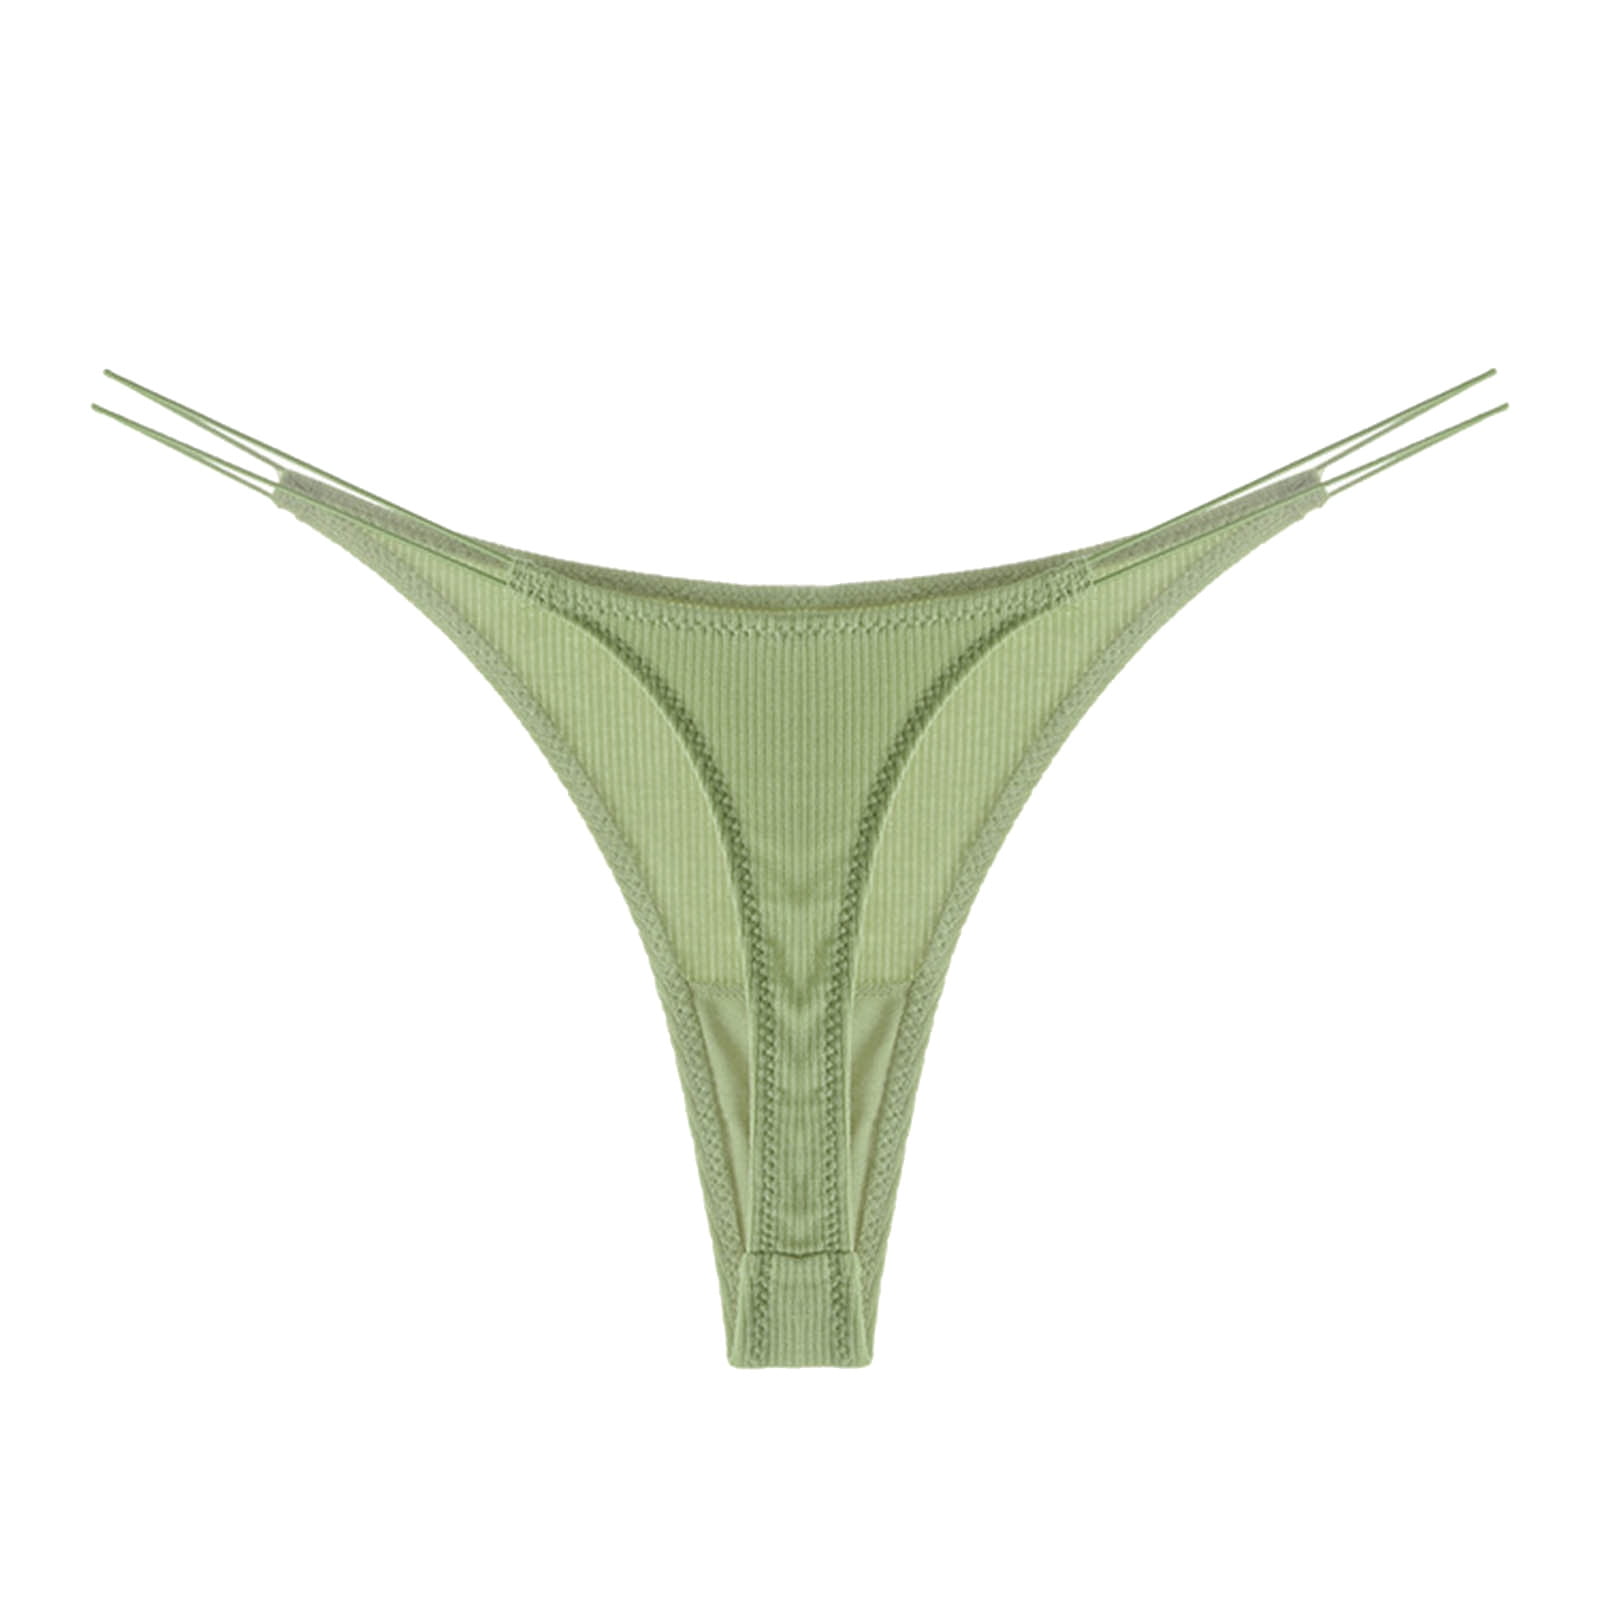 WANYNG Women Panties Mid Waist Briefs Figure Net Design Hollow